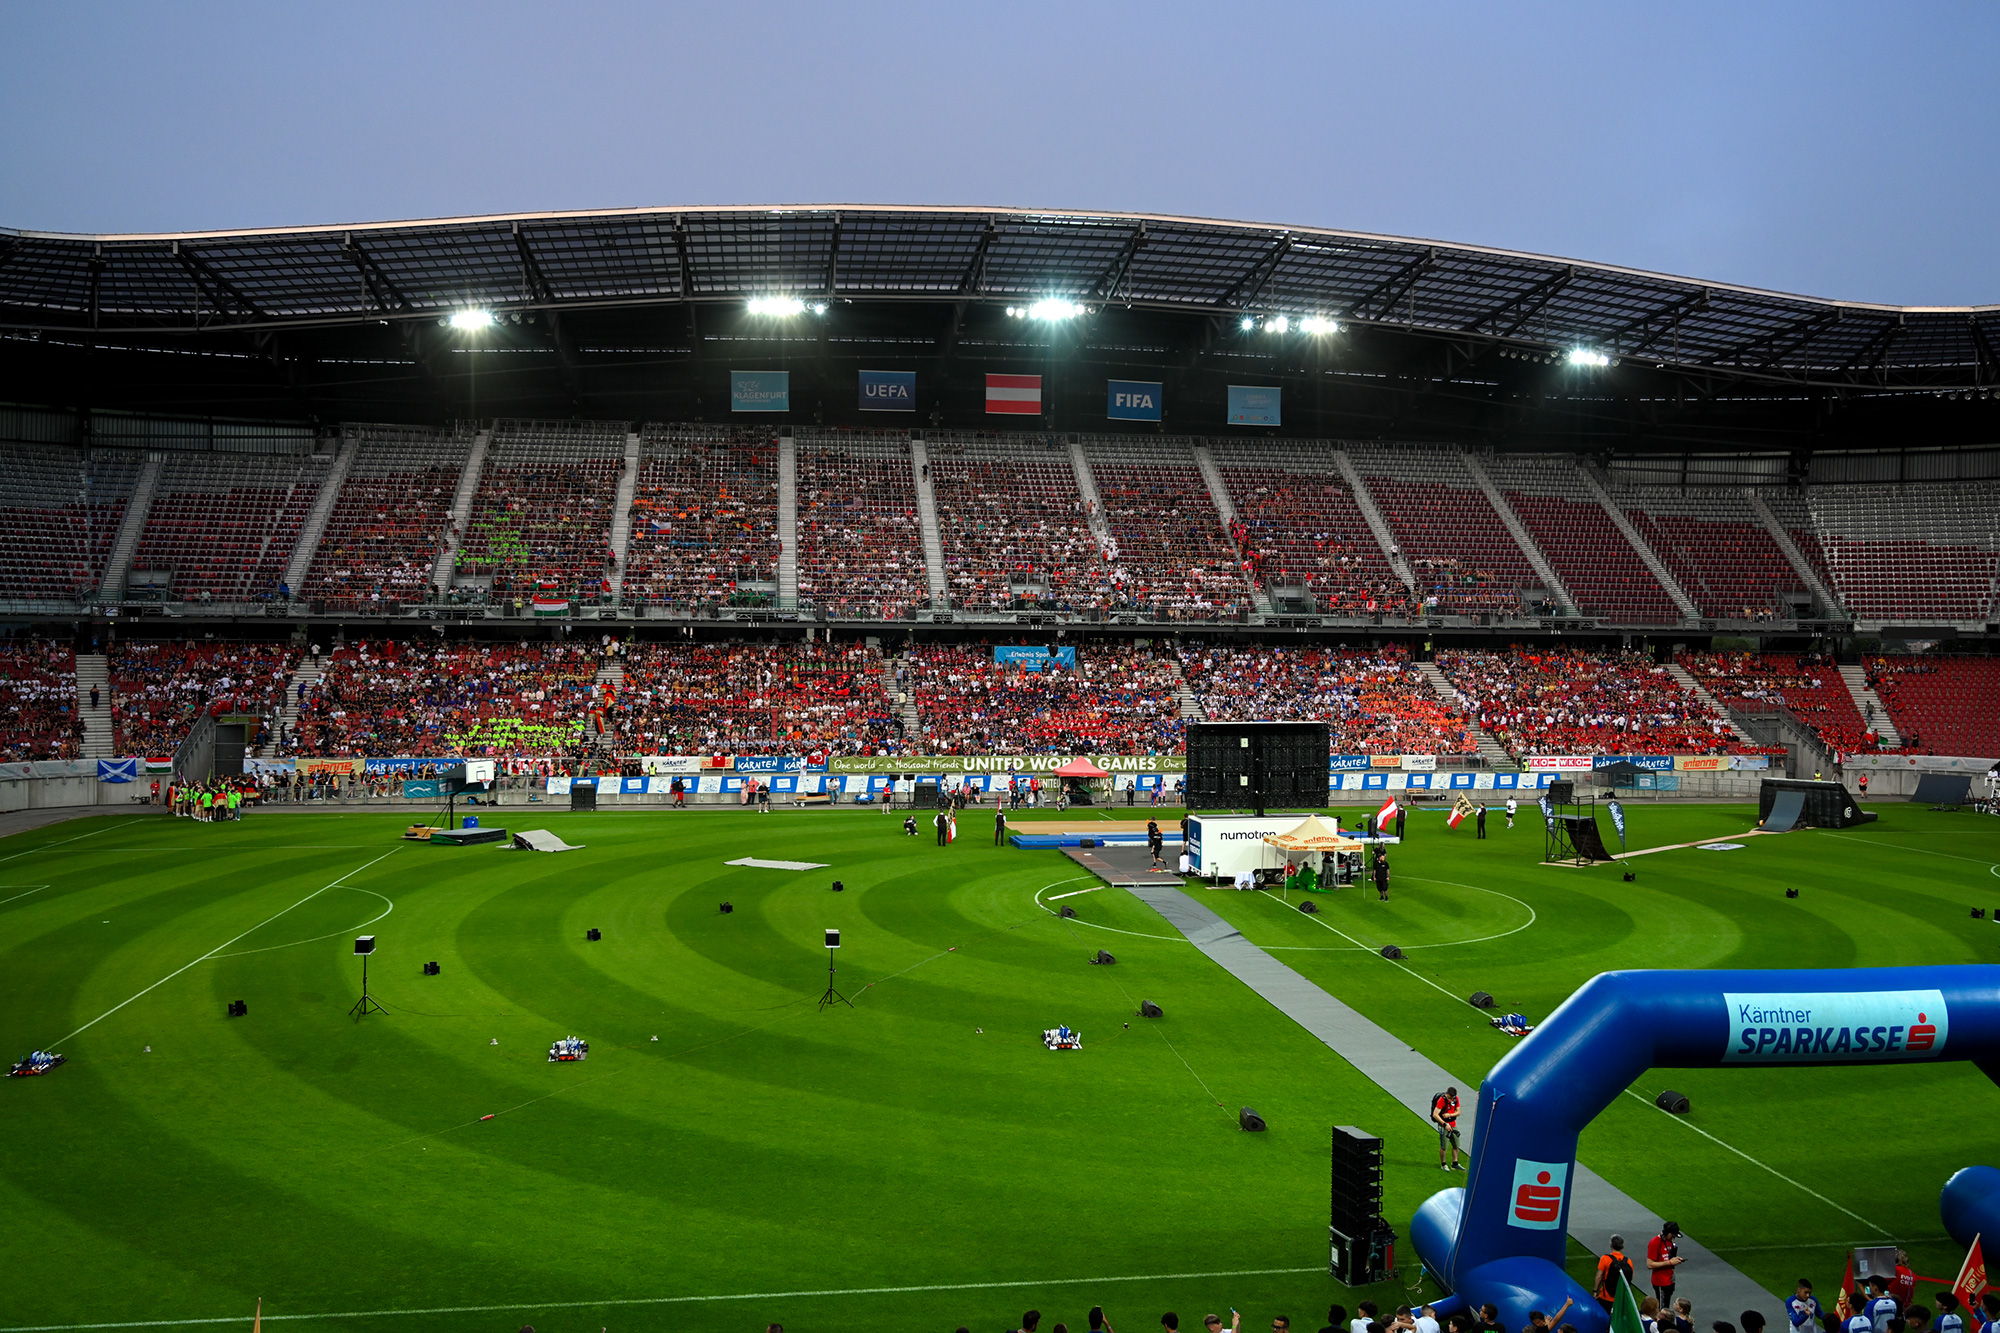 Stadium, cérémonie d'ouverture du United World Games